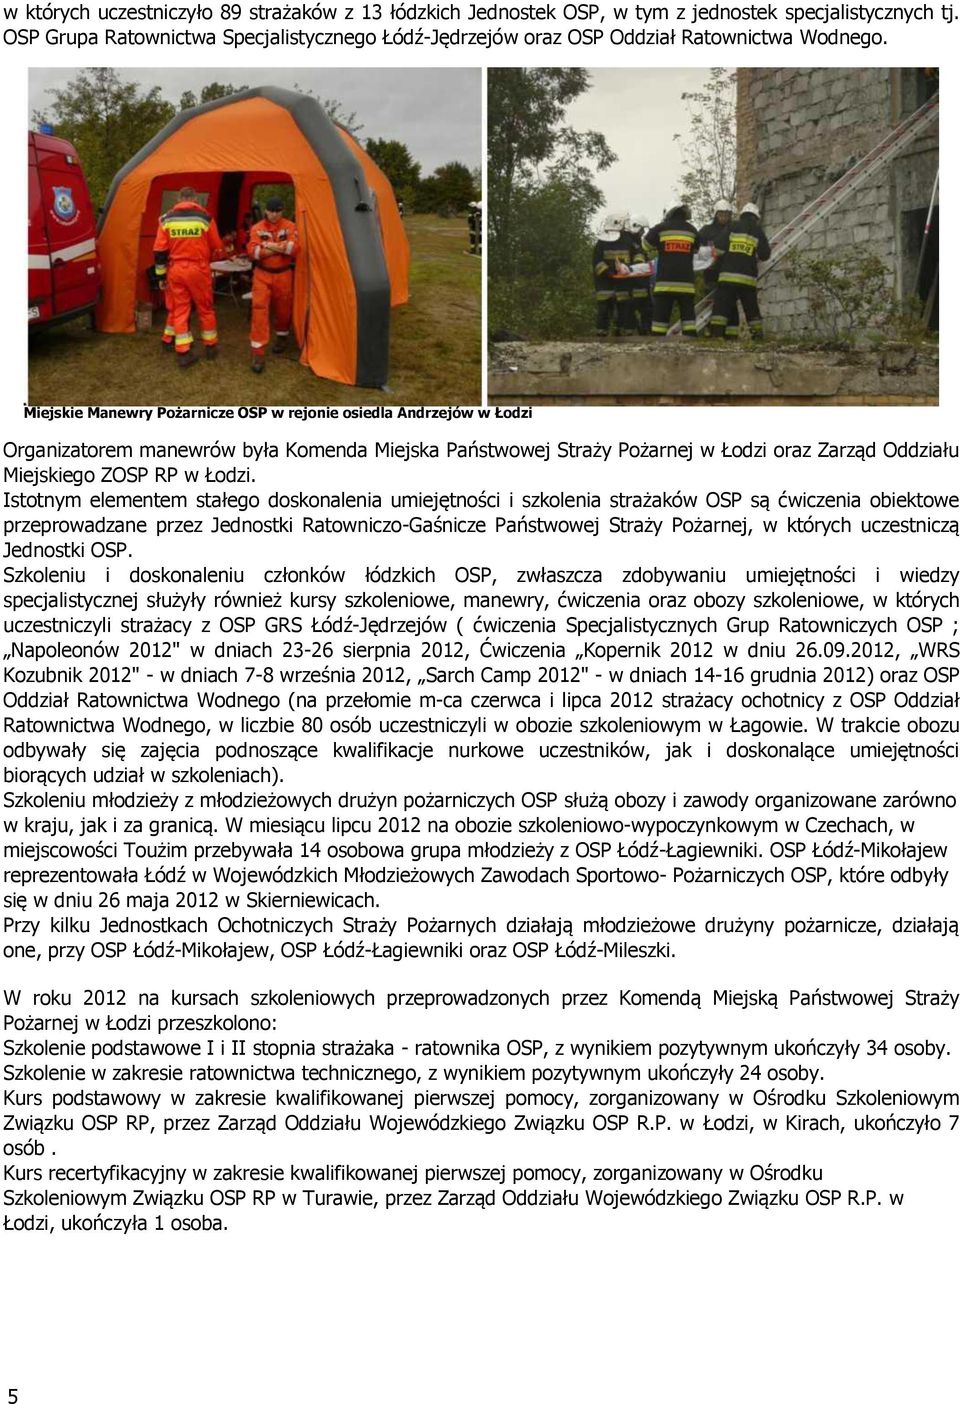 Istotnym elementem stałego doskonalenia umiejętności i szkolenia strażaków OSP są ćwiczenia obiektowe przeprowadzane przez Jednostki Ratowniczo-Gaśnicze Państwowej Straży Pożarnej, w których